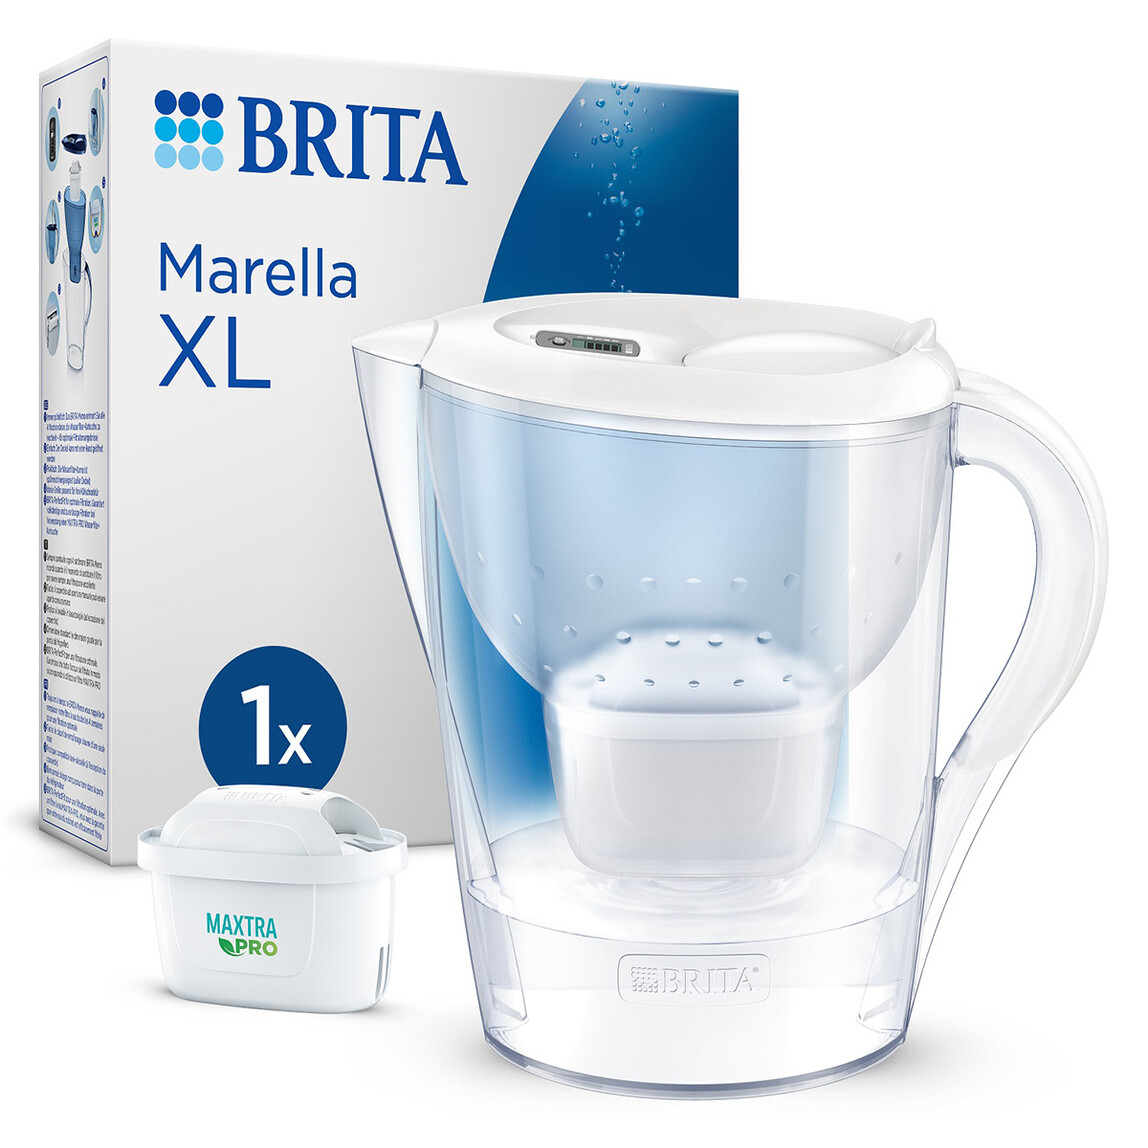    BRITA Marella XL Filtreli Su Arıtma Sürahisi - Beyaz 